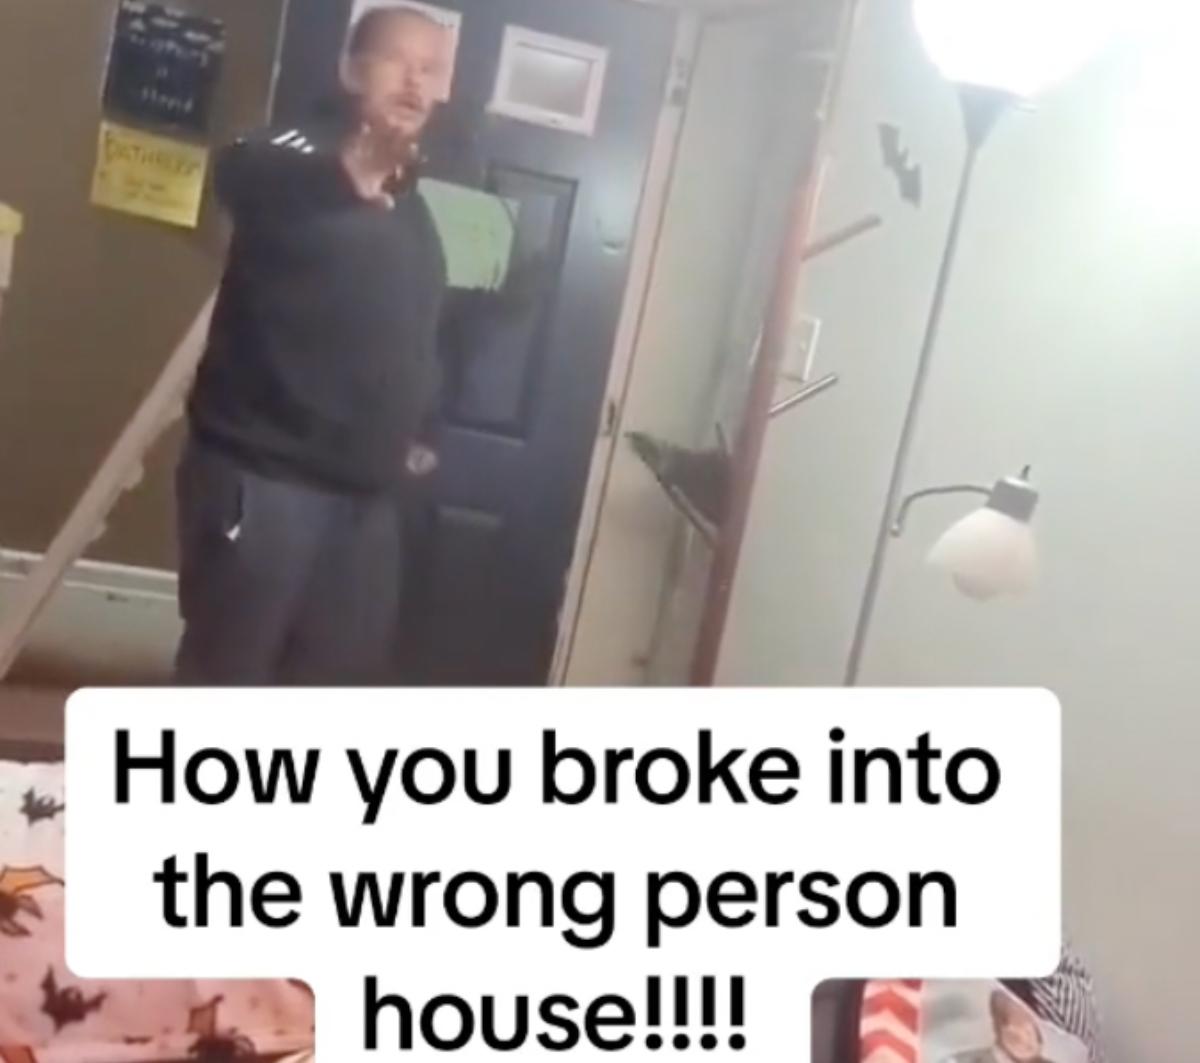 En man pratar med den boende efter att ha brutit in i deras hem